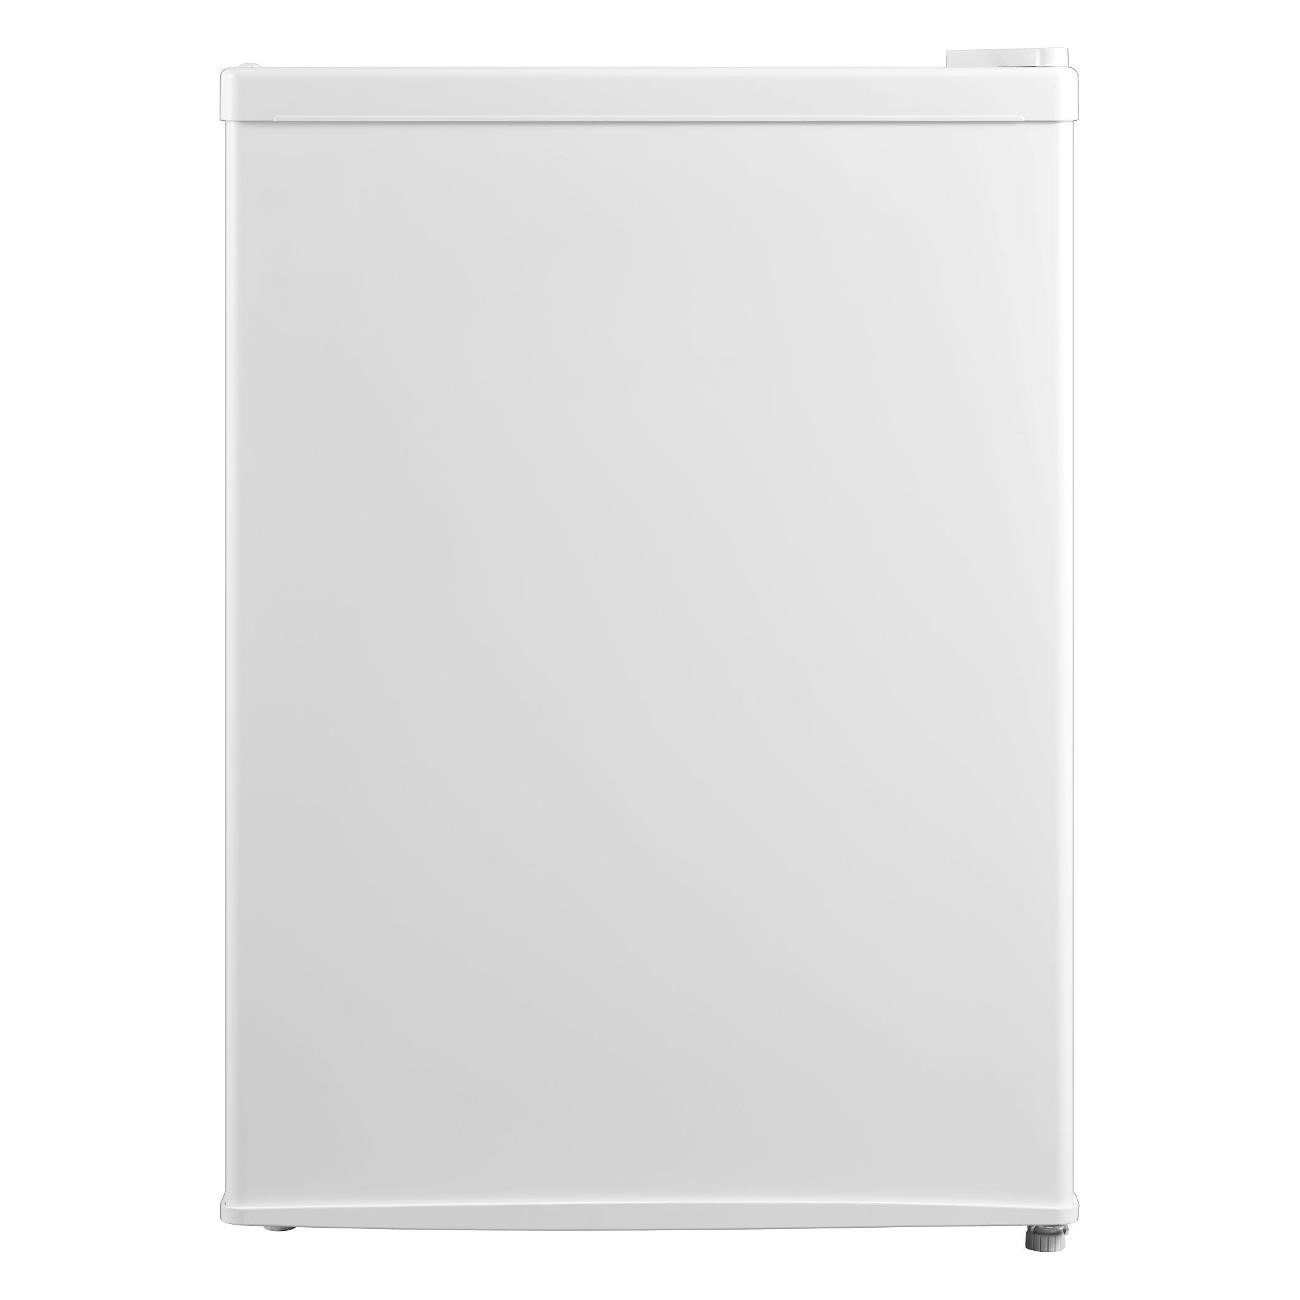 Холодильник Hi HODN063045RW белый, купить в Москве, цены в интернет-магазинах на Мегамаркет